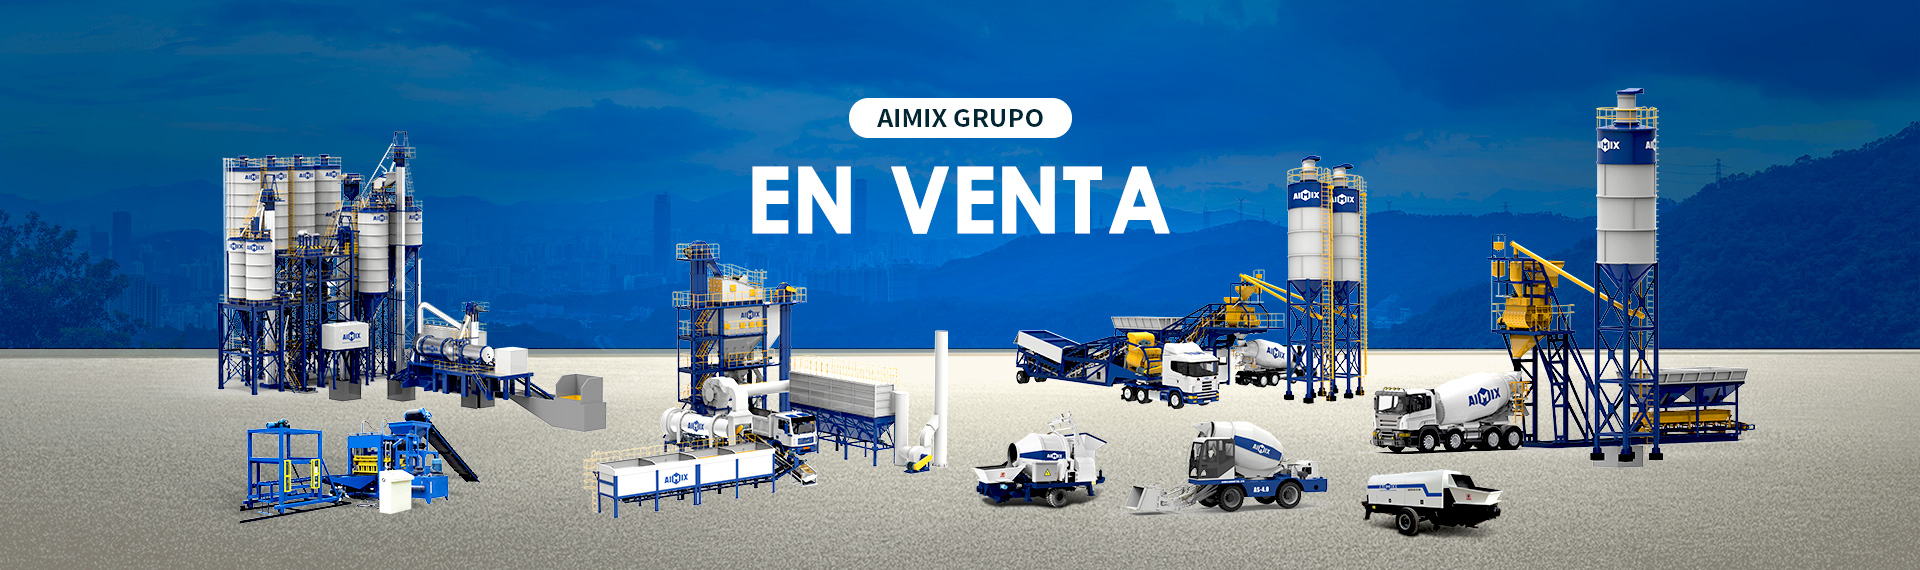 AIMIX Grupo - Máquinas De Construcción En Venta